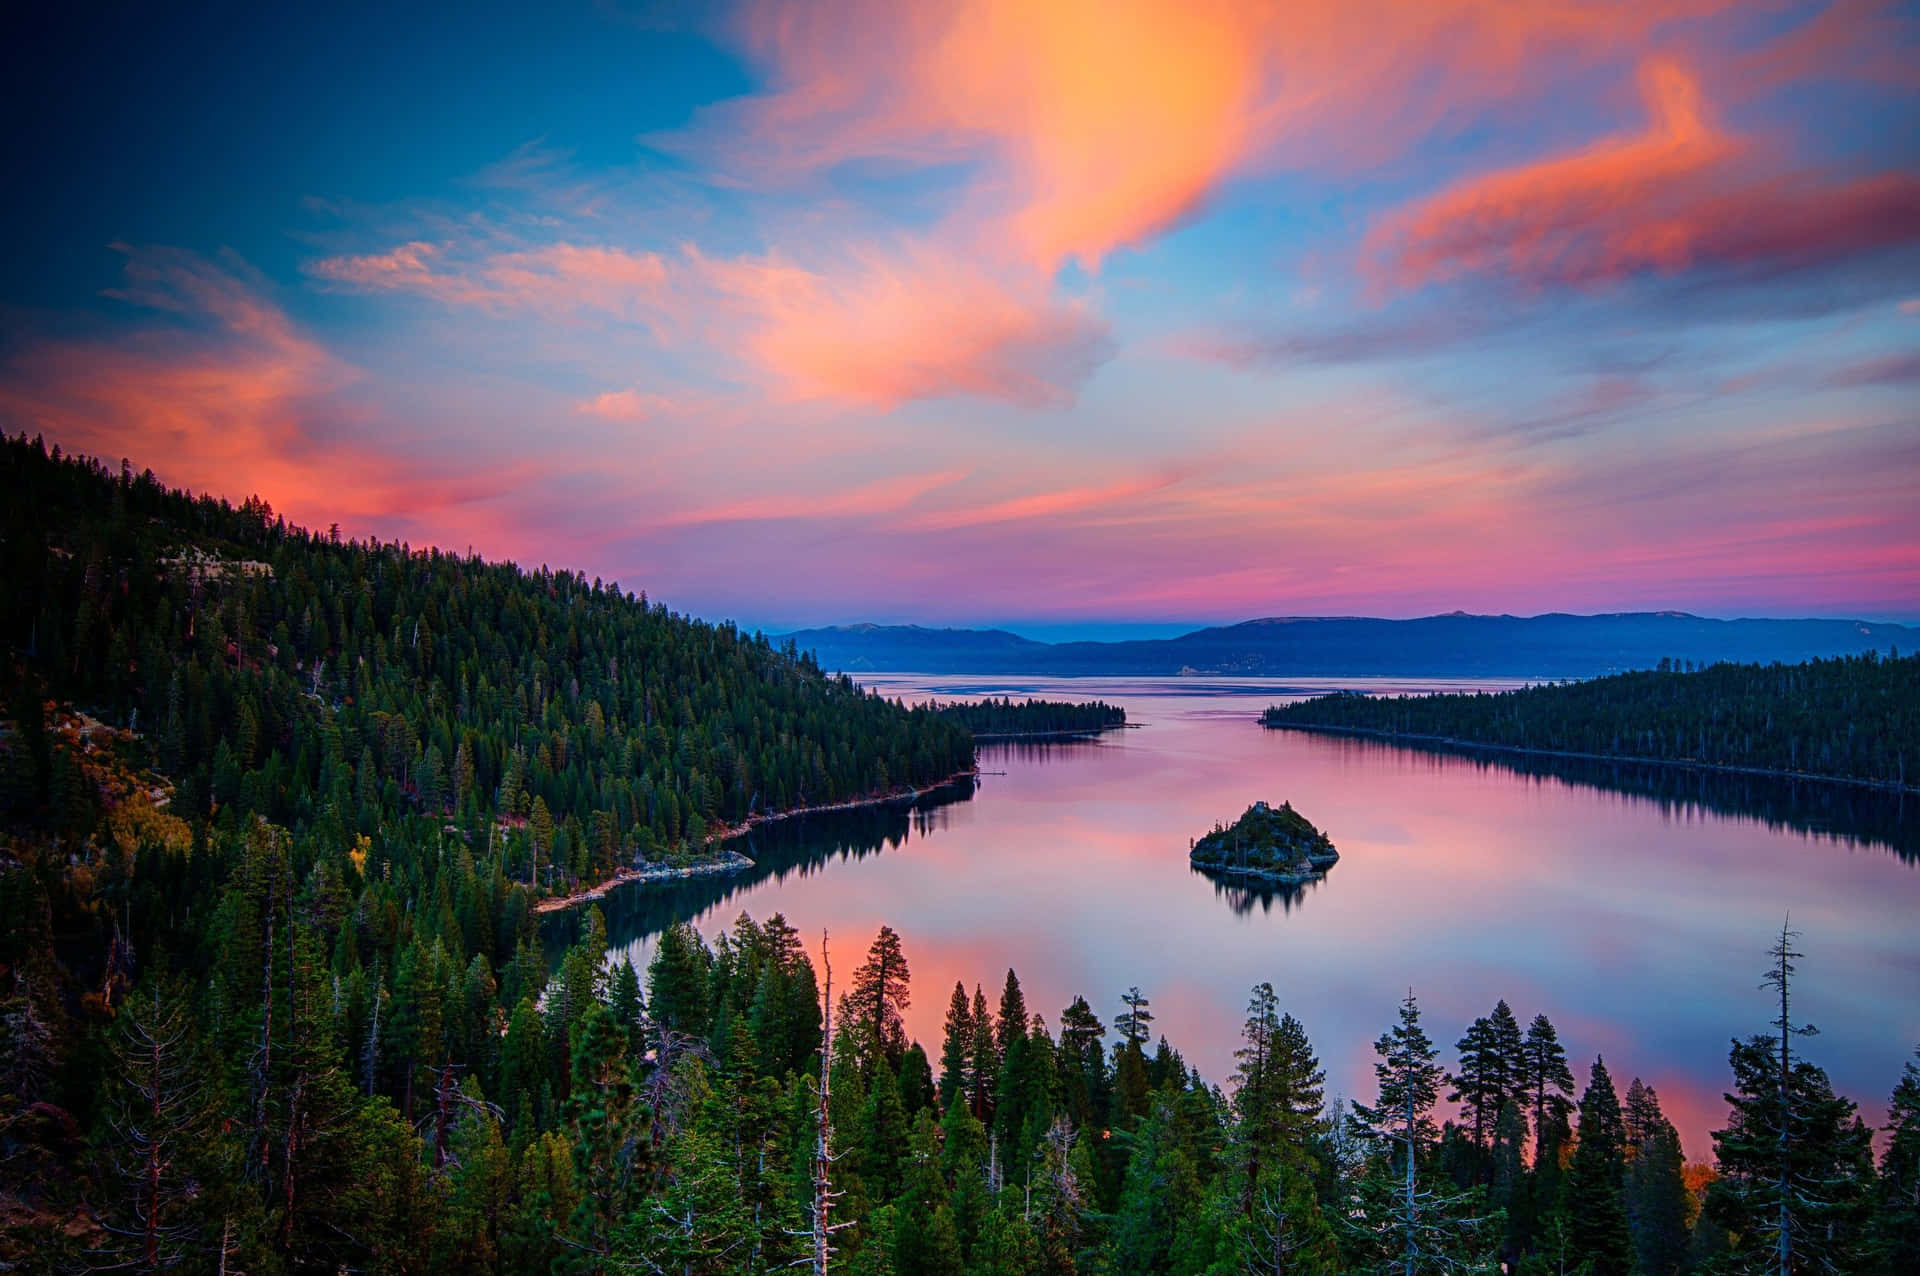 Take in the scenery of Lake Tahoe in majestic 4K. Wallpaper